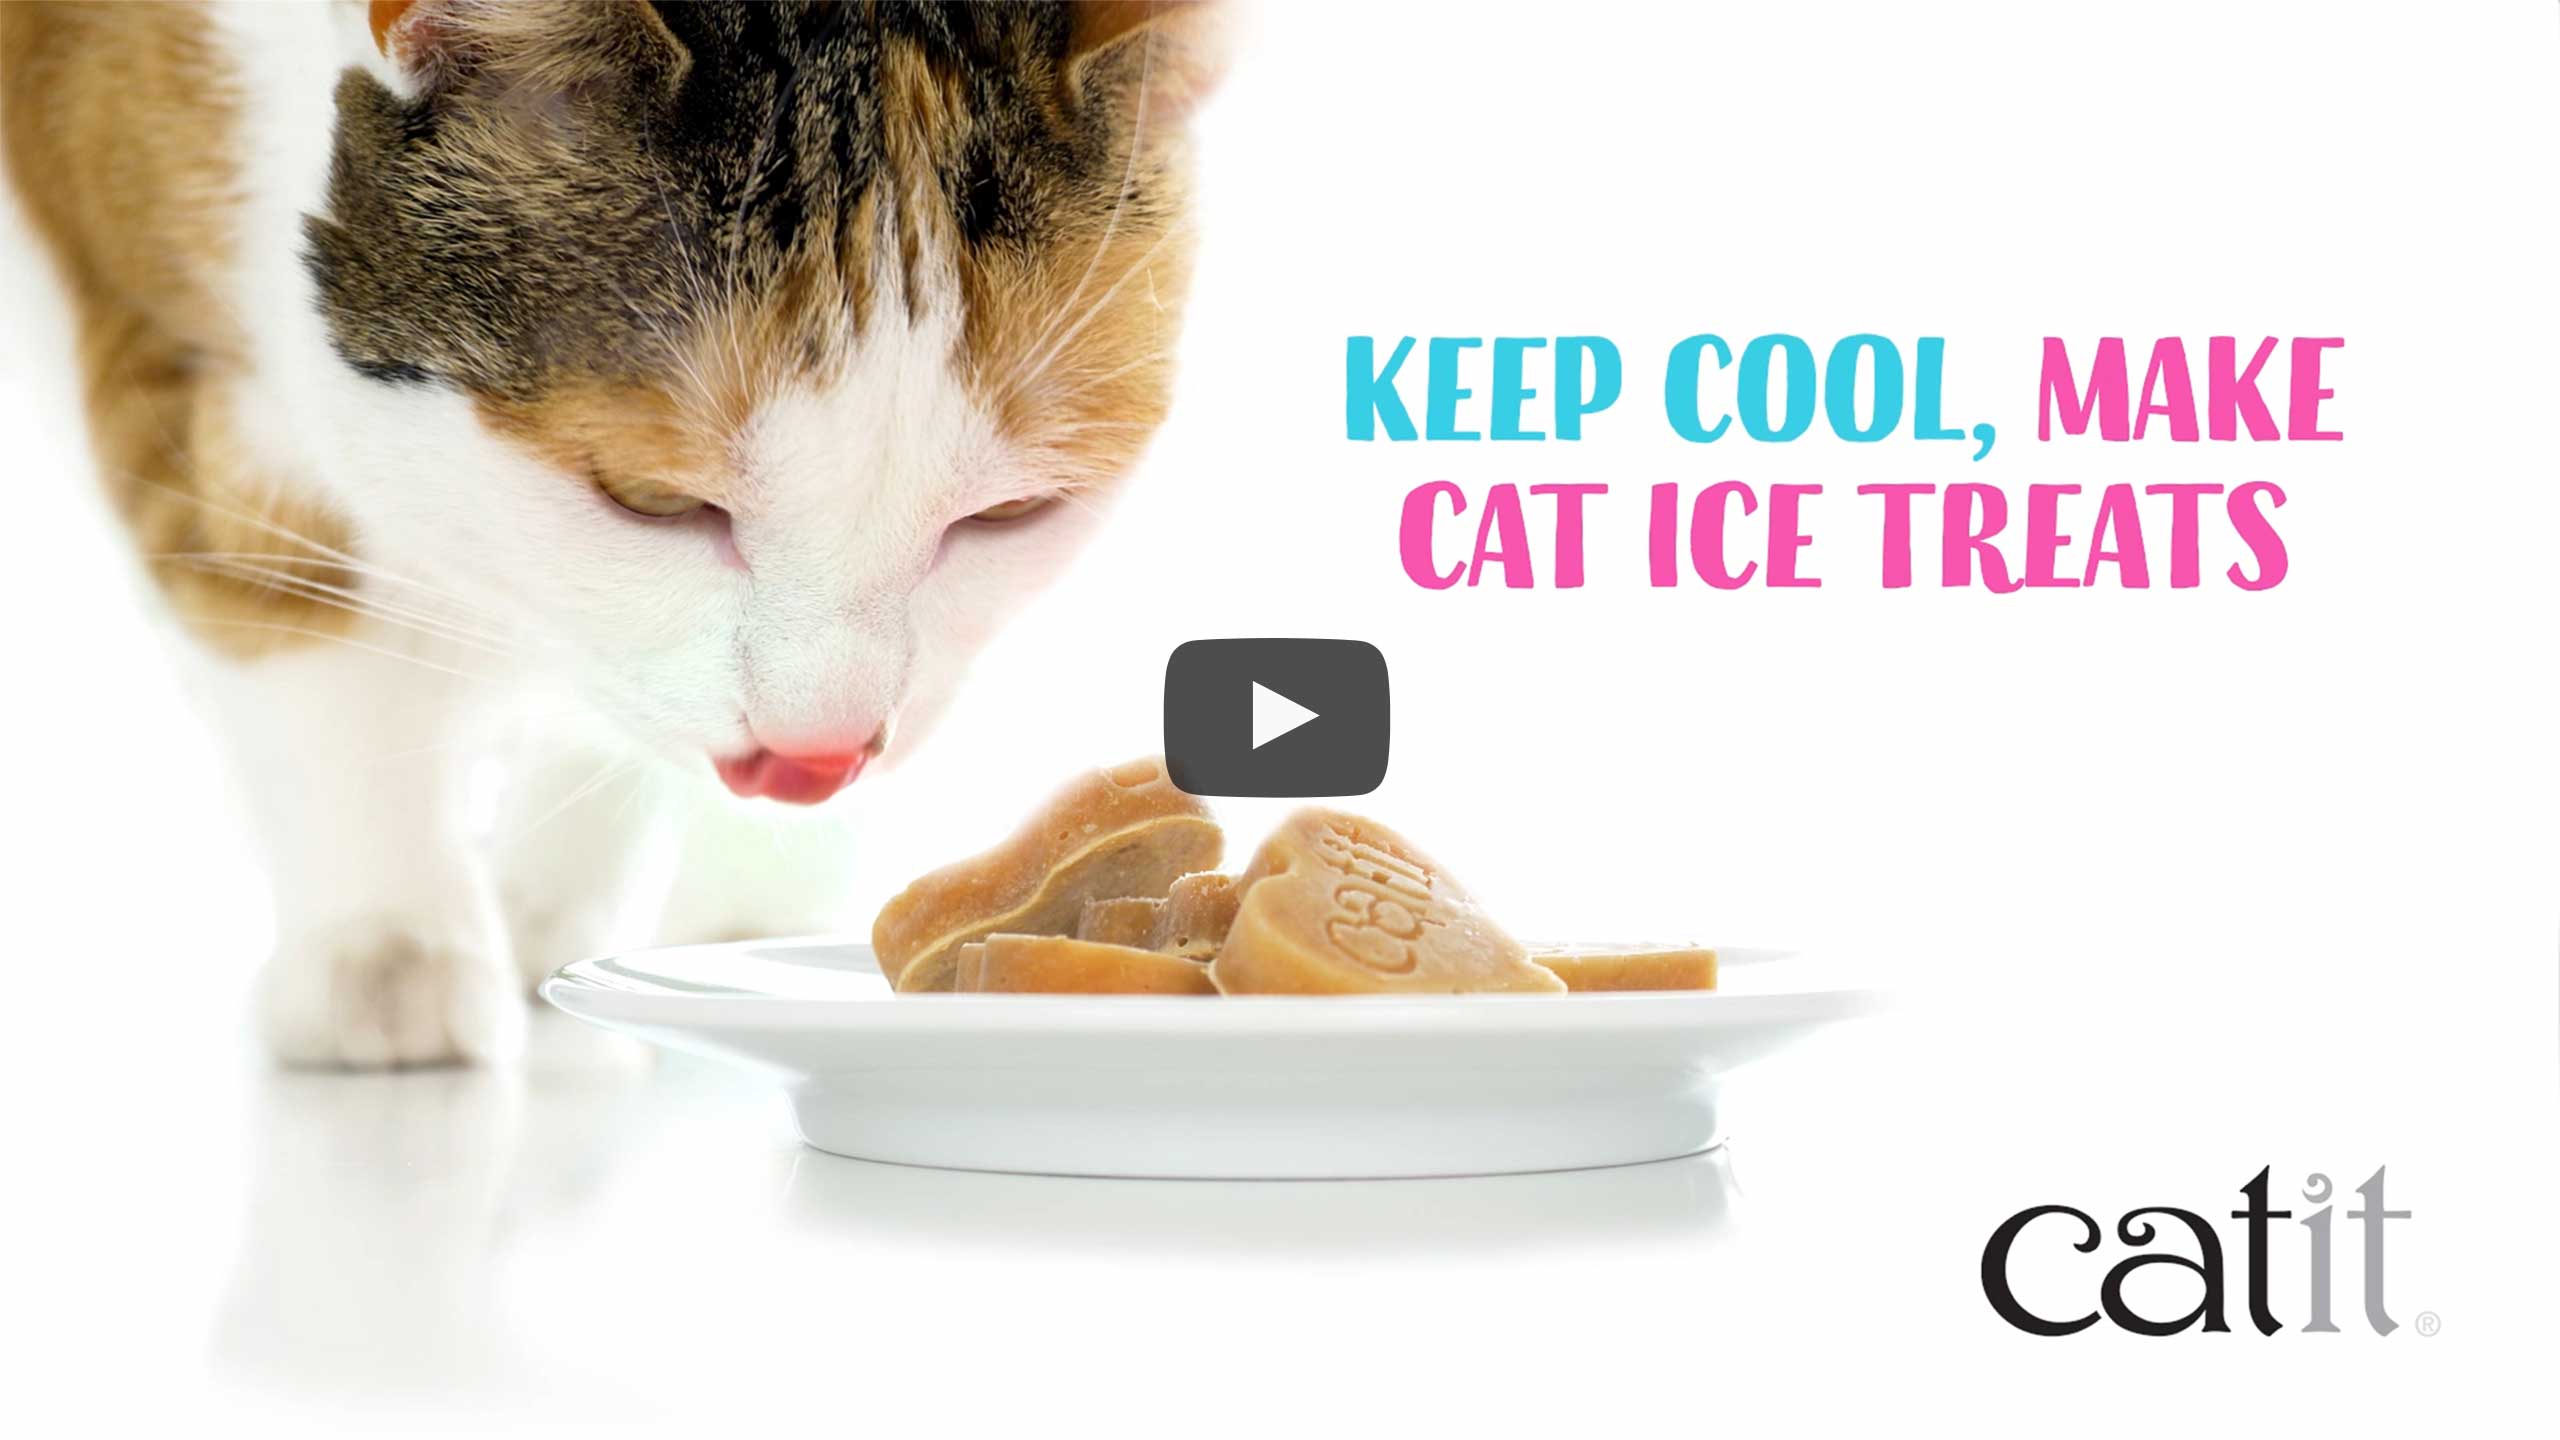 Maak overheerlijke, gezonde, en hydraterende ijspralines voor je kat met onze Catit Creamy Hartvormige Silicone Ijsvorm.